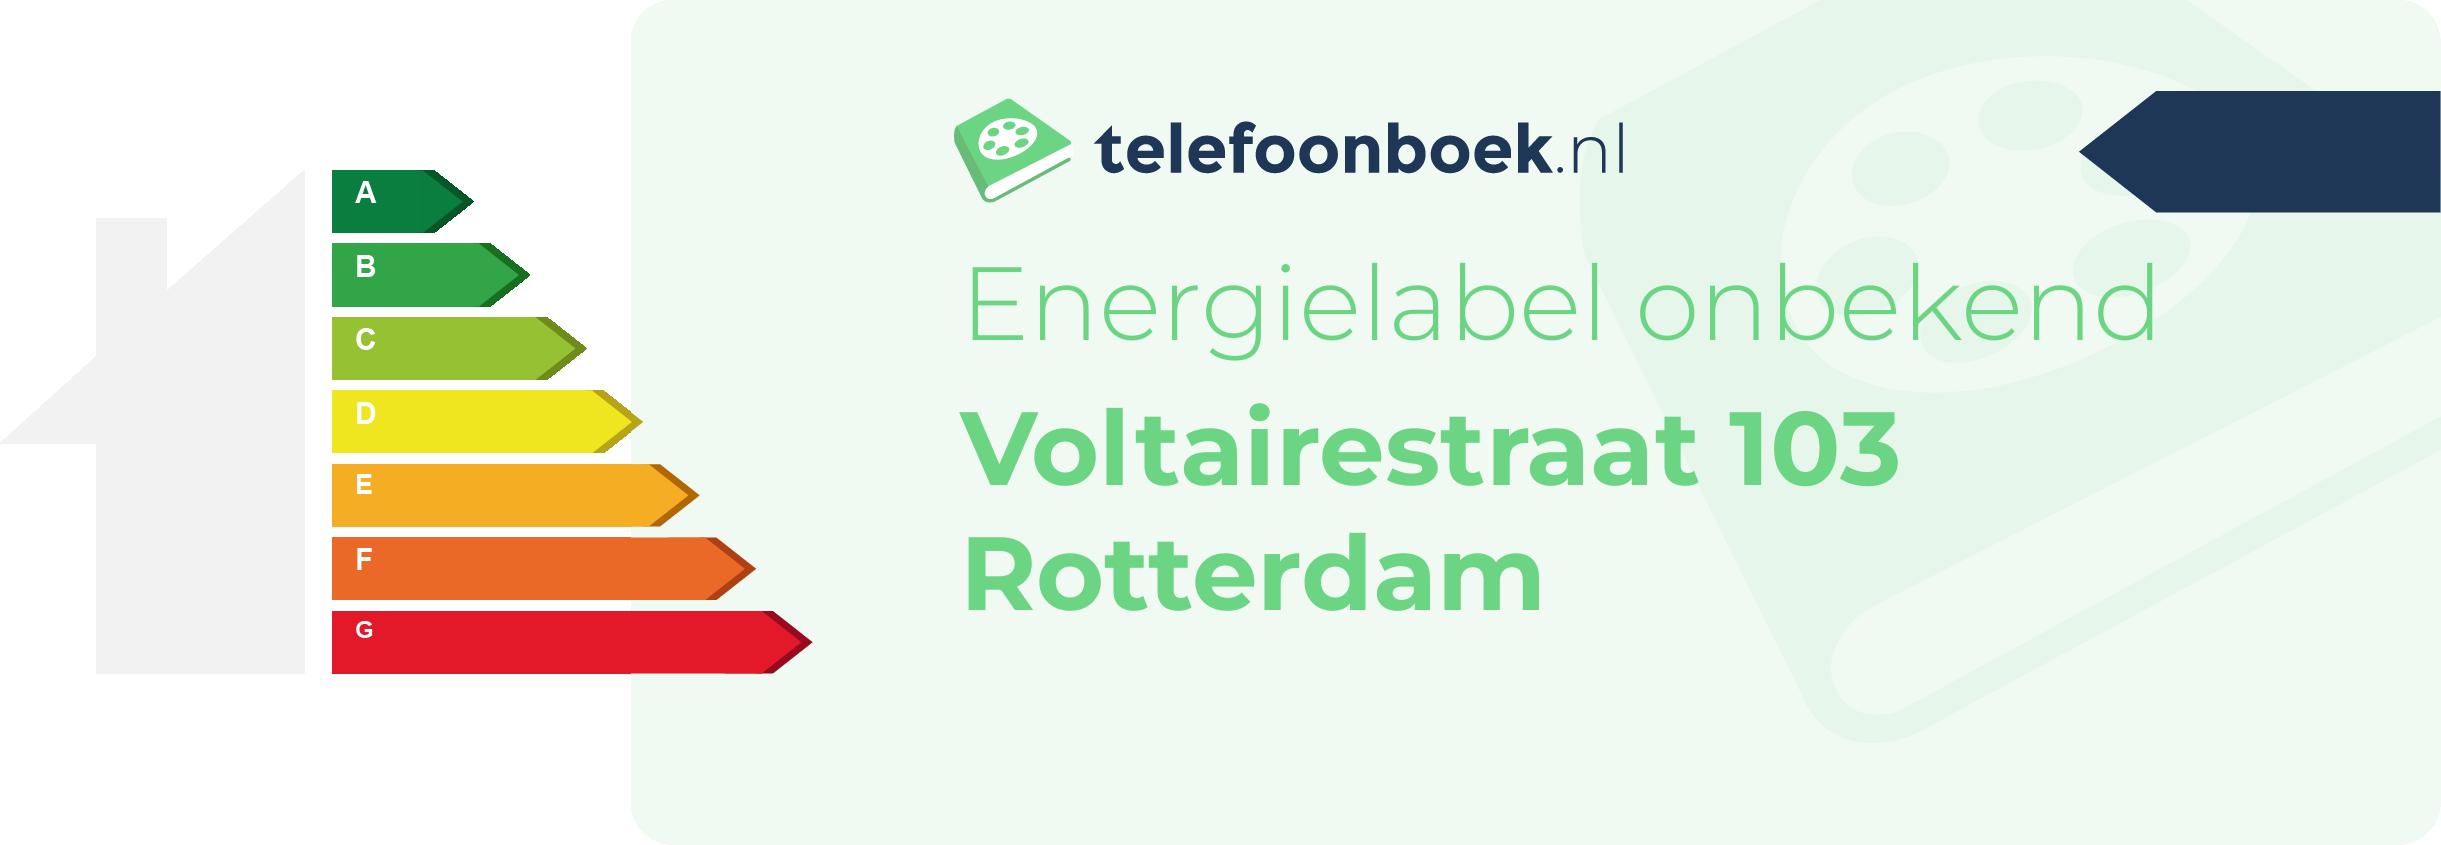 Energielabel Voltairestraat 103 Rotterdam